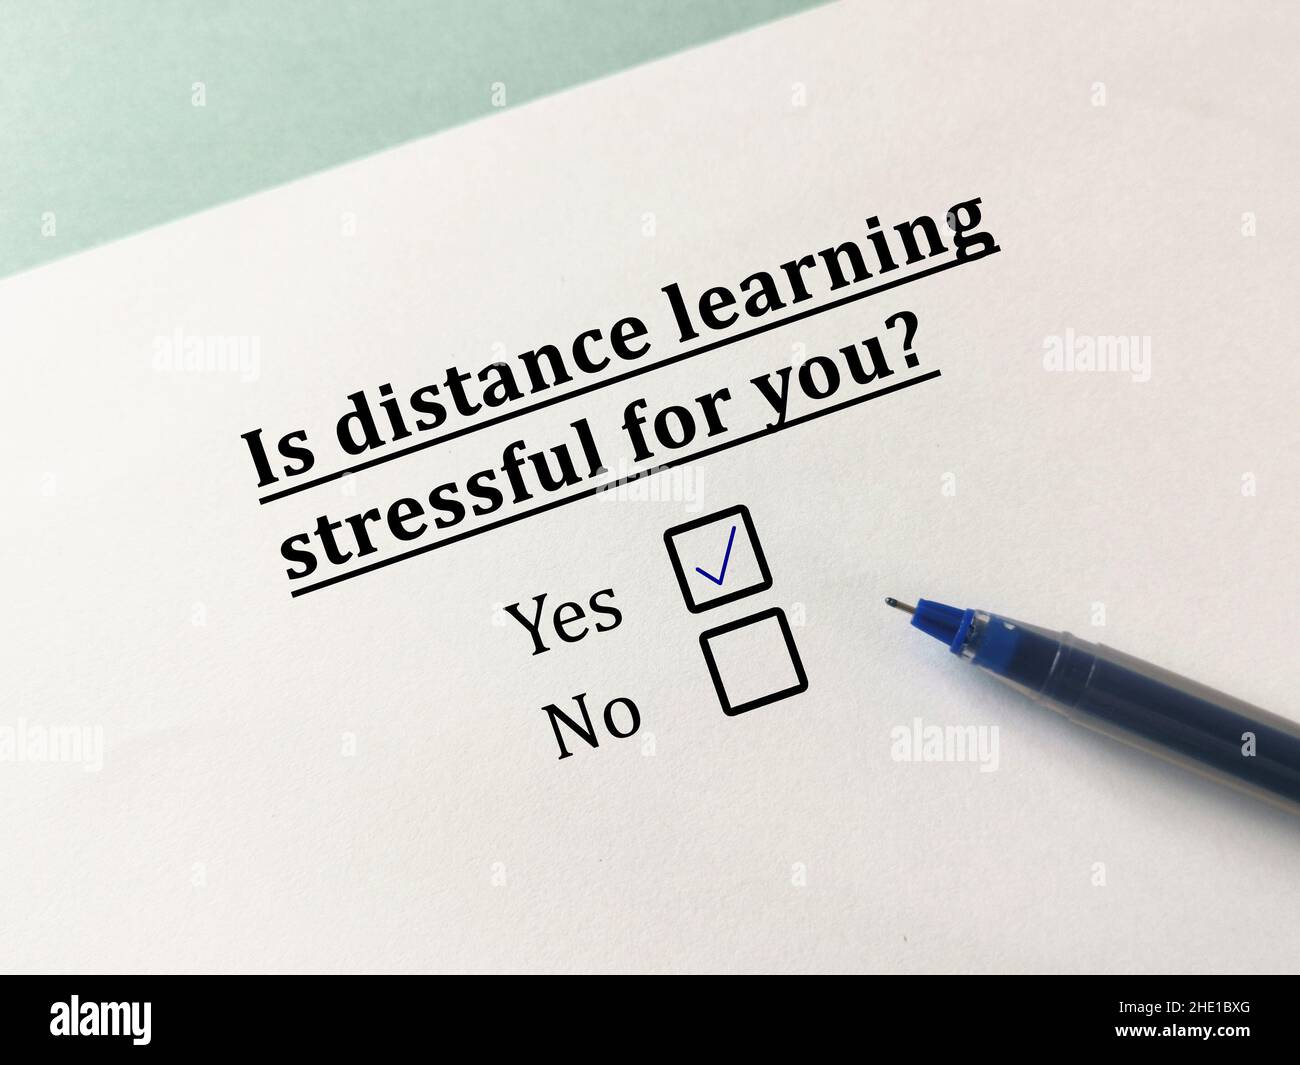 Une personne répond à une question sur l'apprentissage en ligne.La personne pense que l'apprentissage à distance est stressant. Banque D'Images